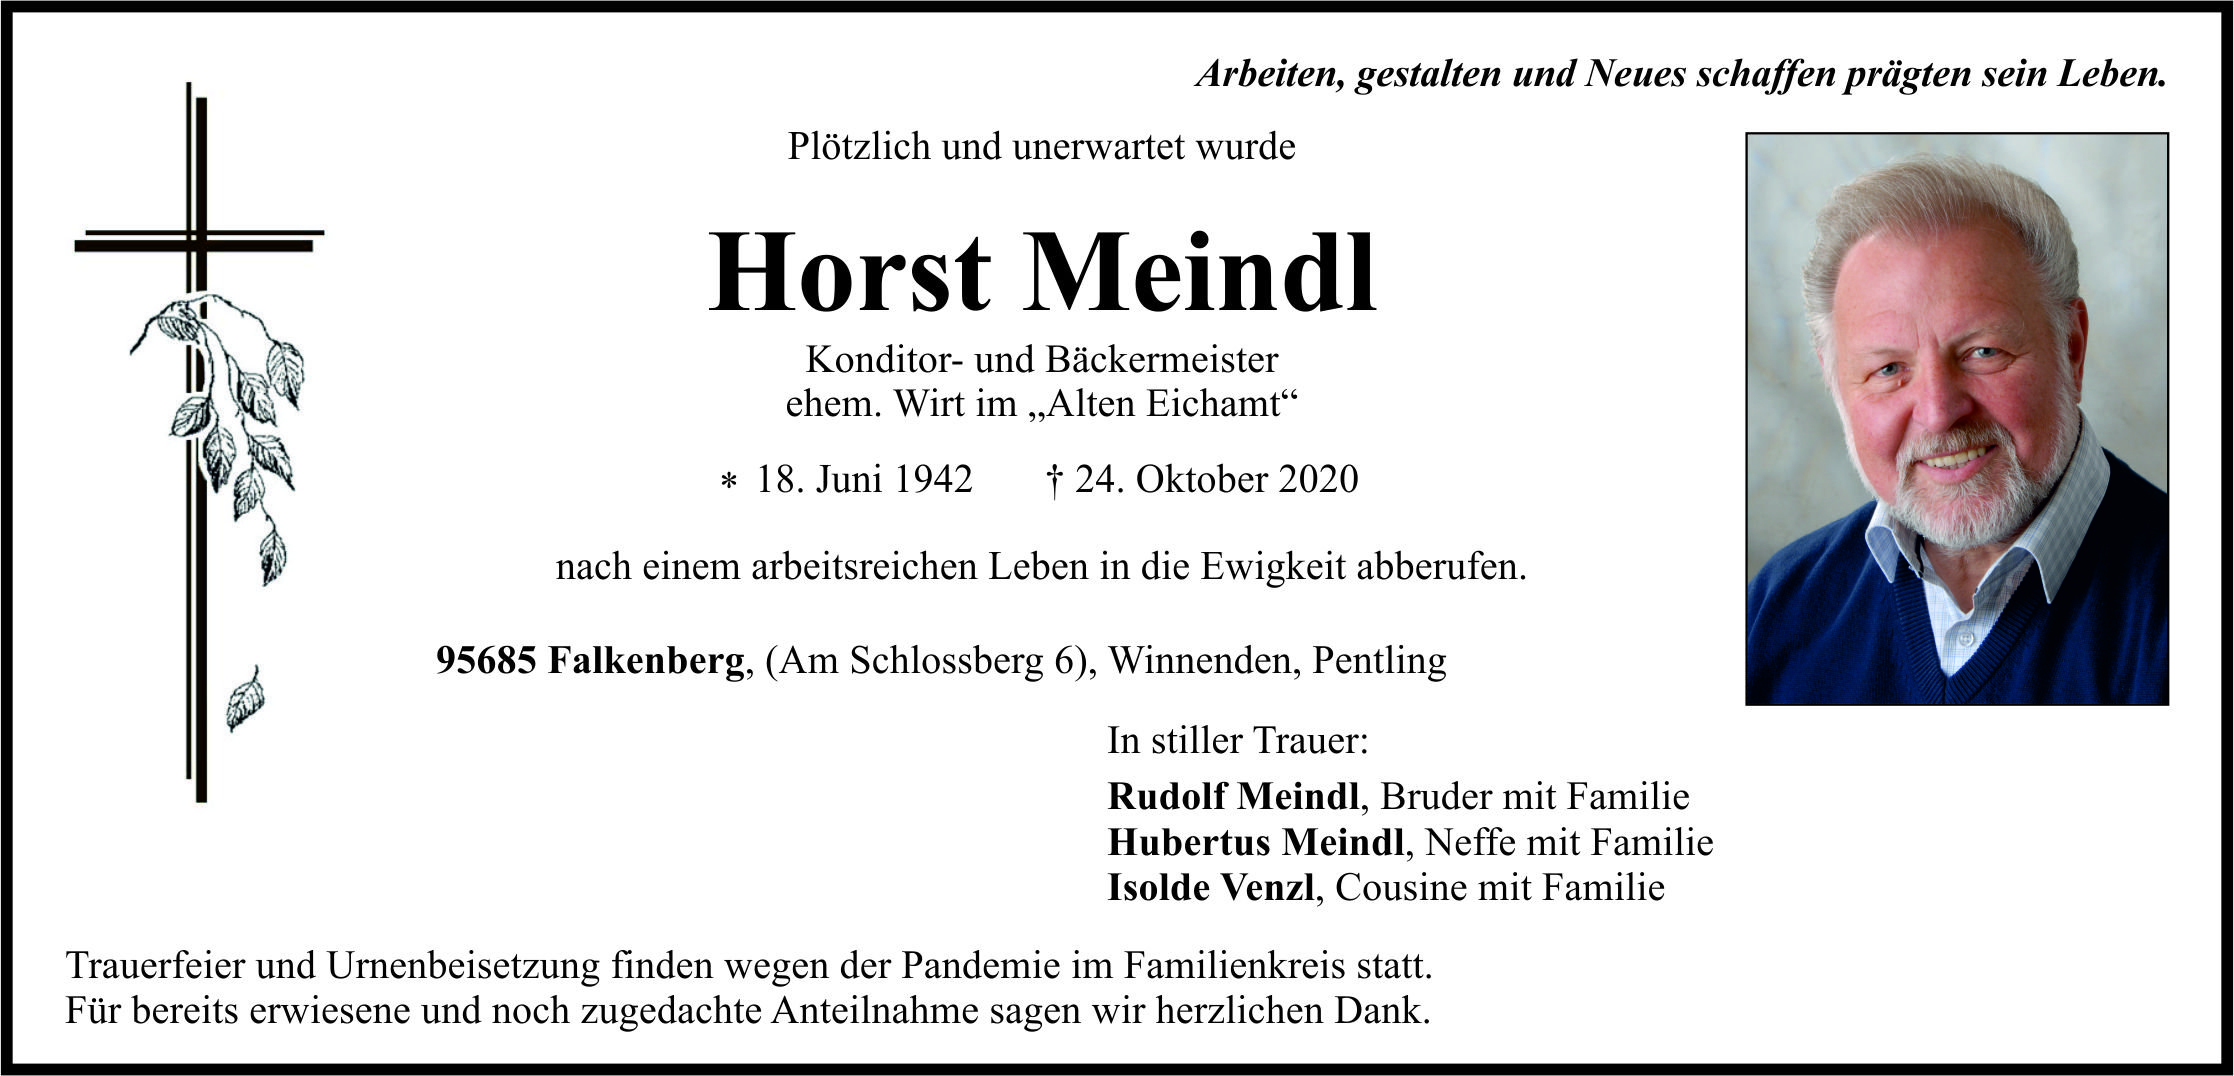 Traueranzeige Horst Meindl, Falkenberg